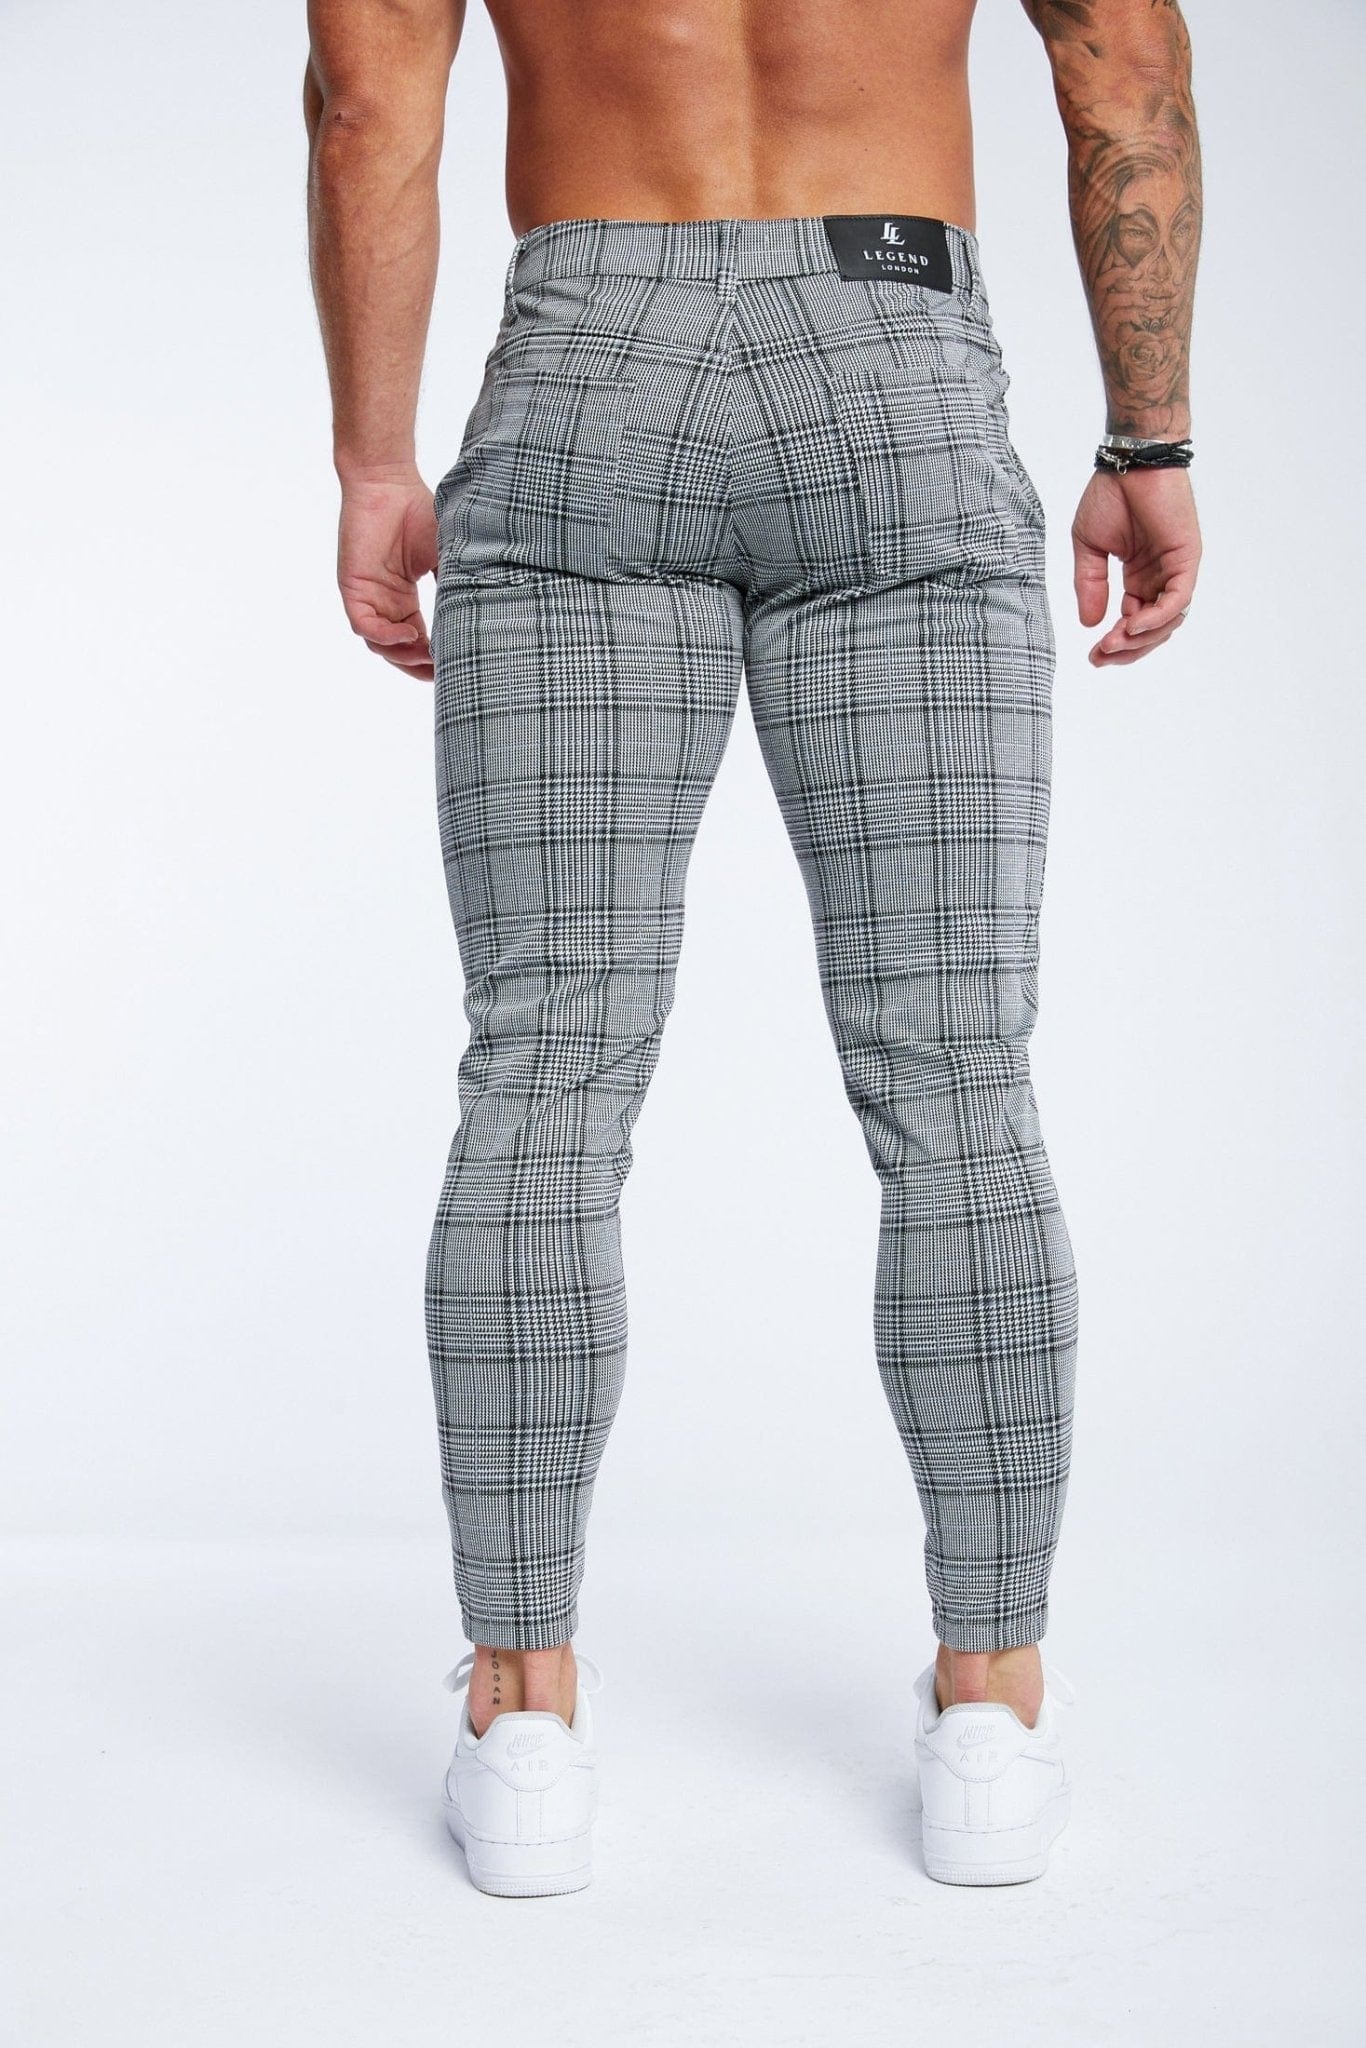 Buy Highlander Light Grey Slim Fit Casual Trouser for Men Online at Rs.698  - Ketch